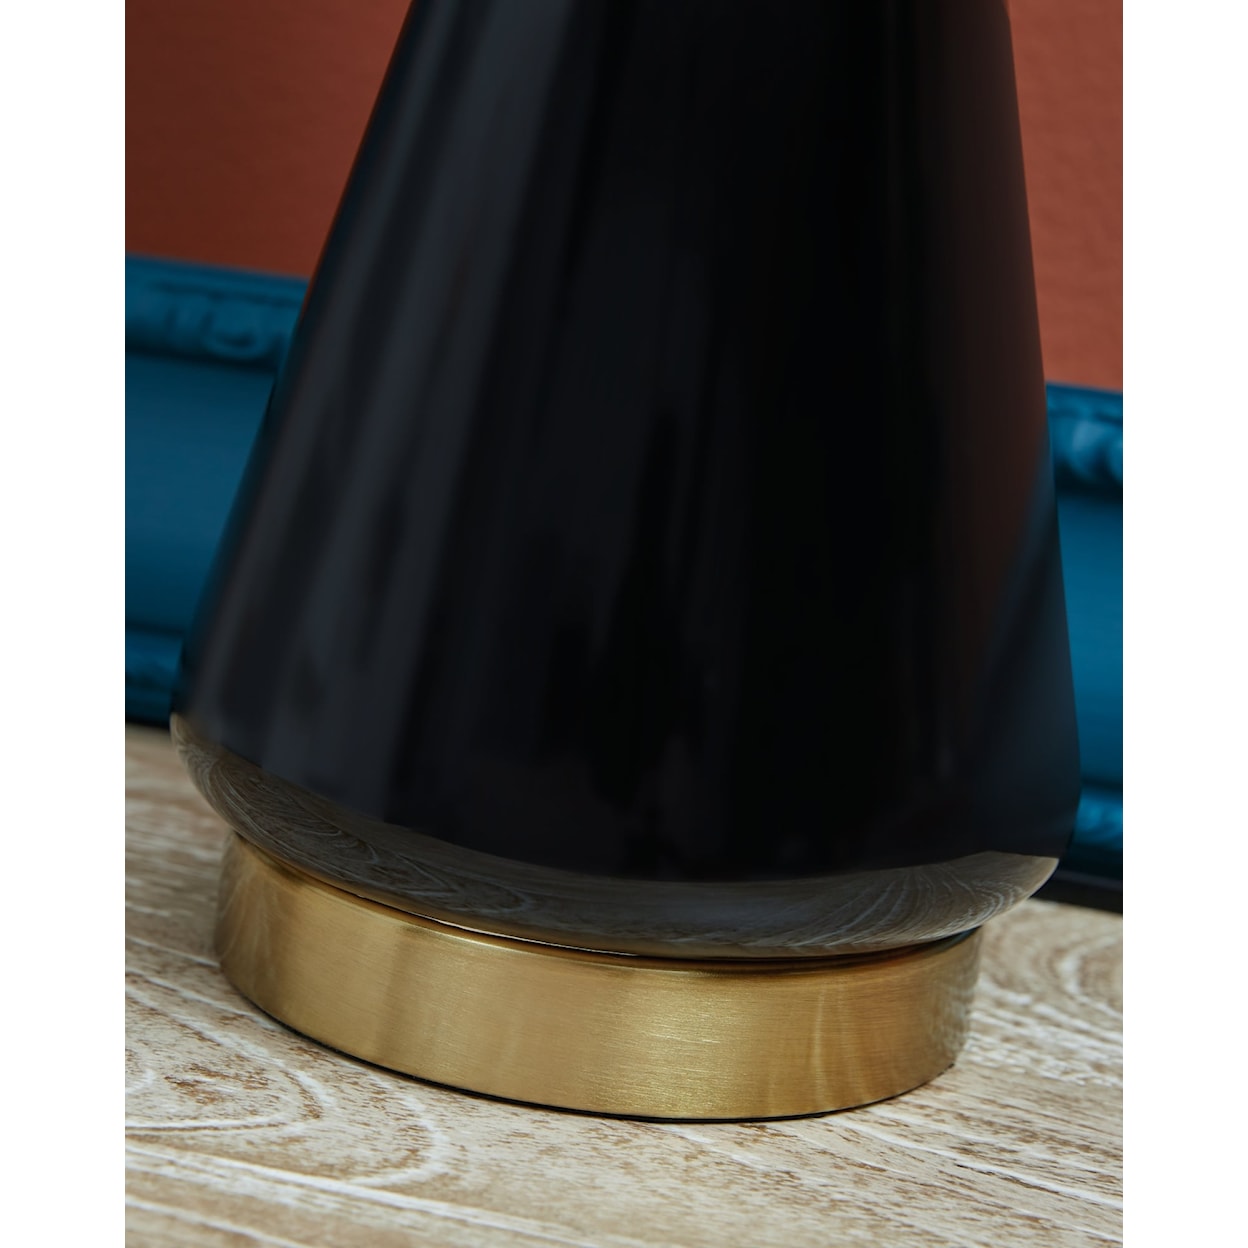 Signature Ackson Ceramic Table Lamp (Set of 2)